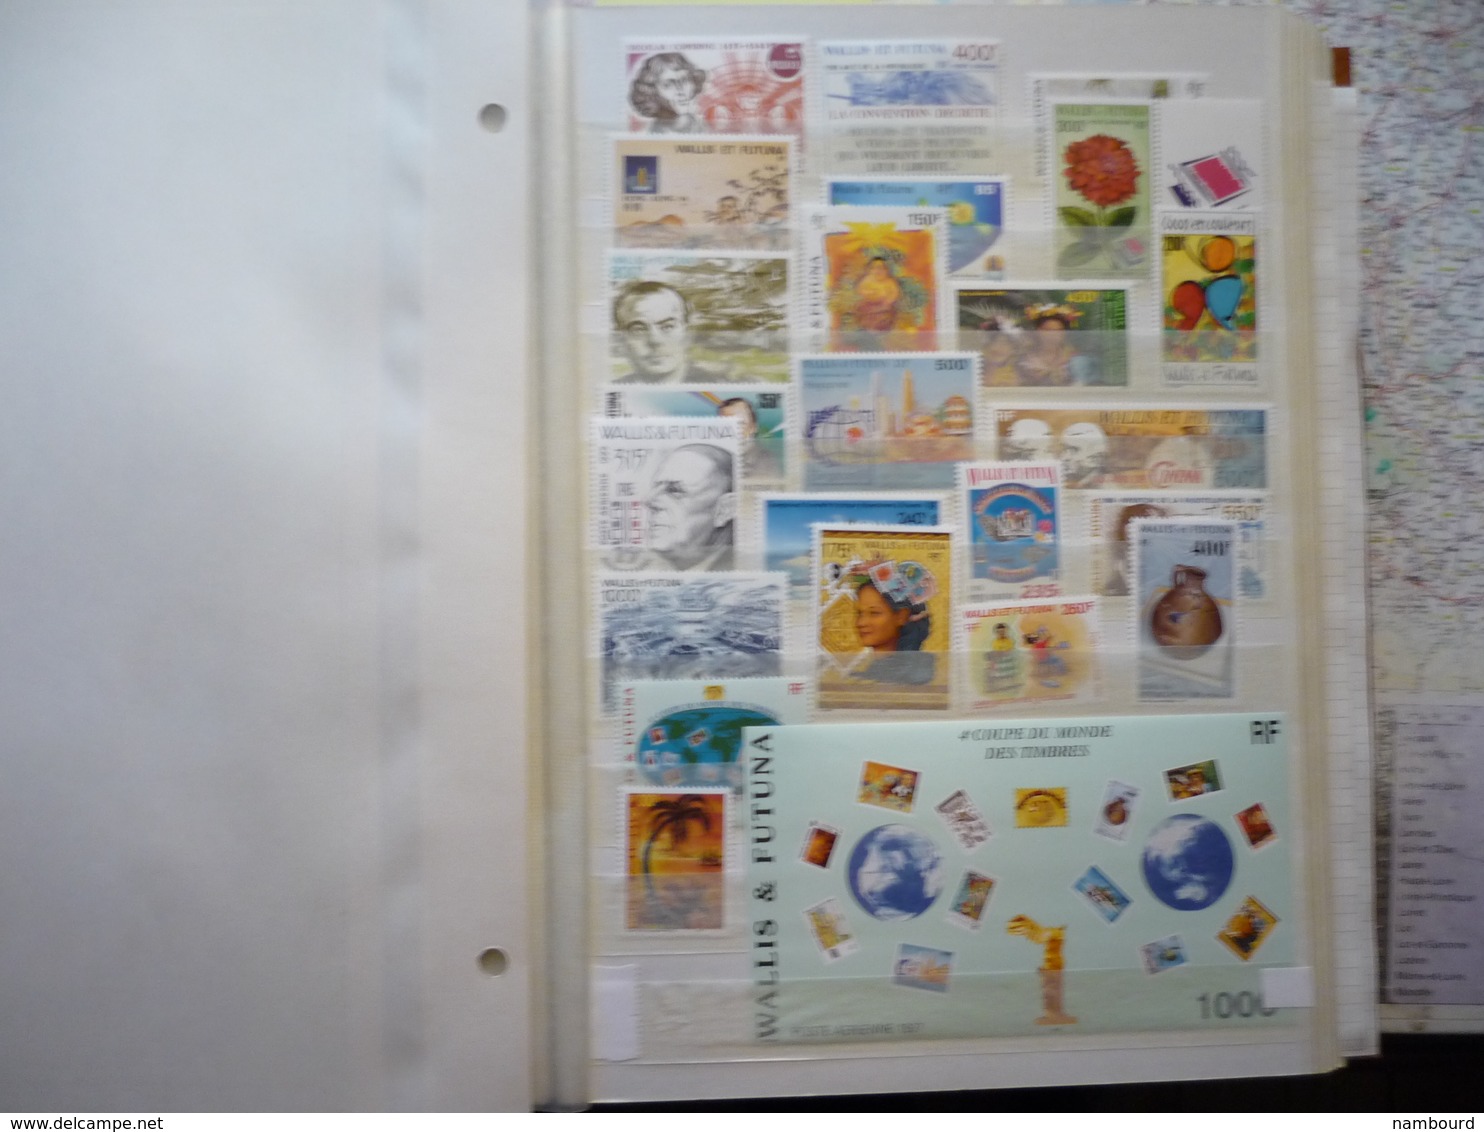 Collection avancée de timbres neufs de Wallis et Futuna du début des émissions à 2009